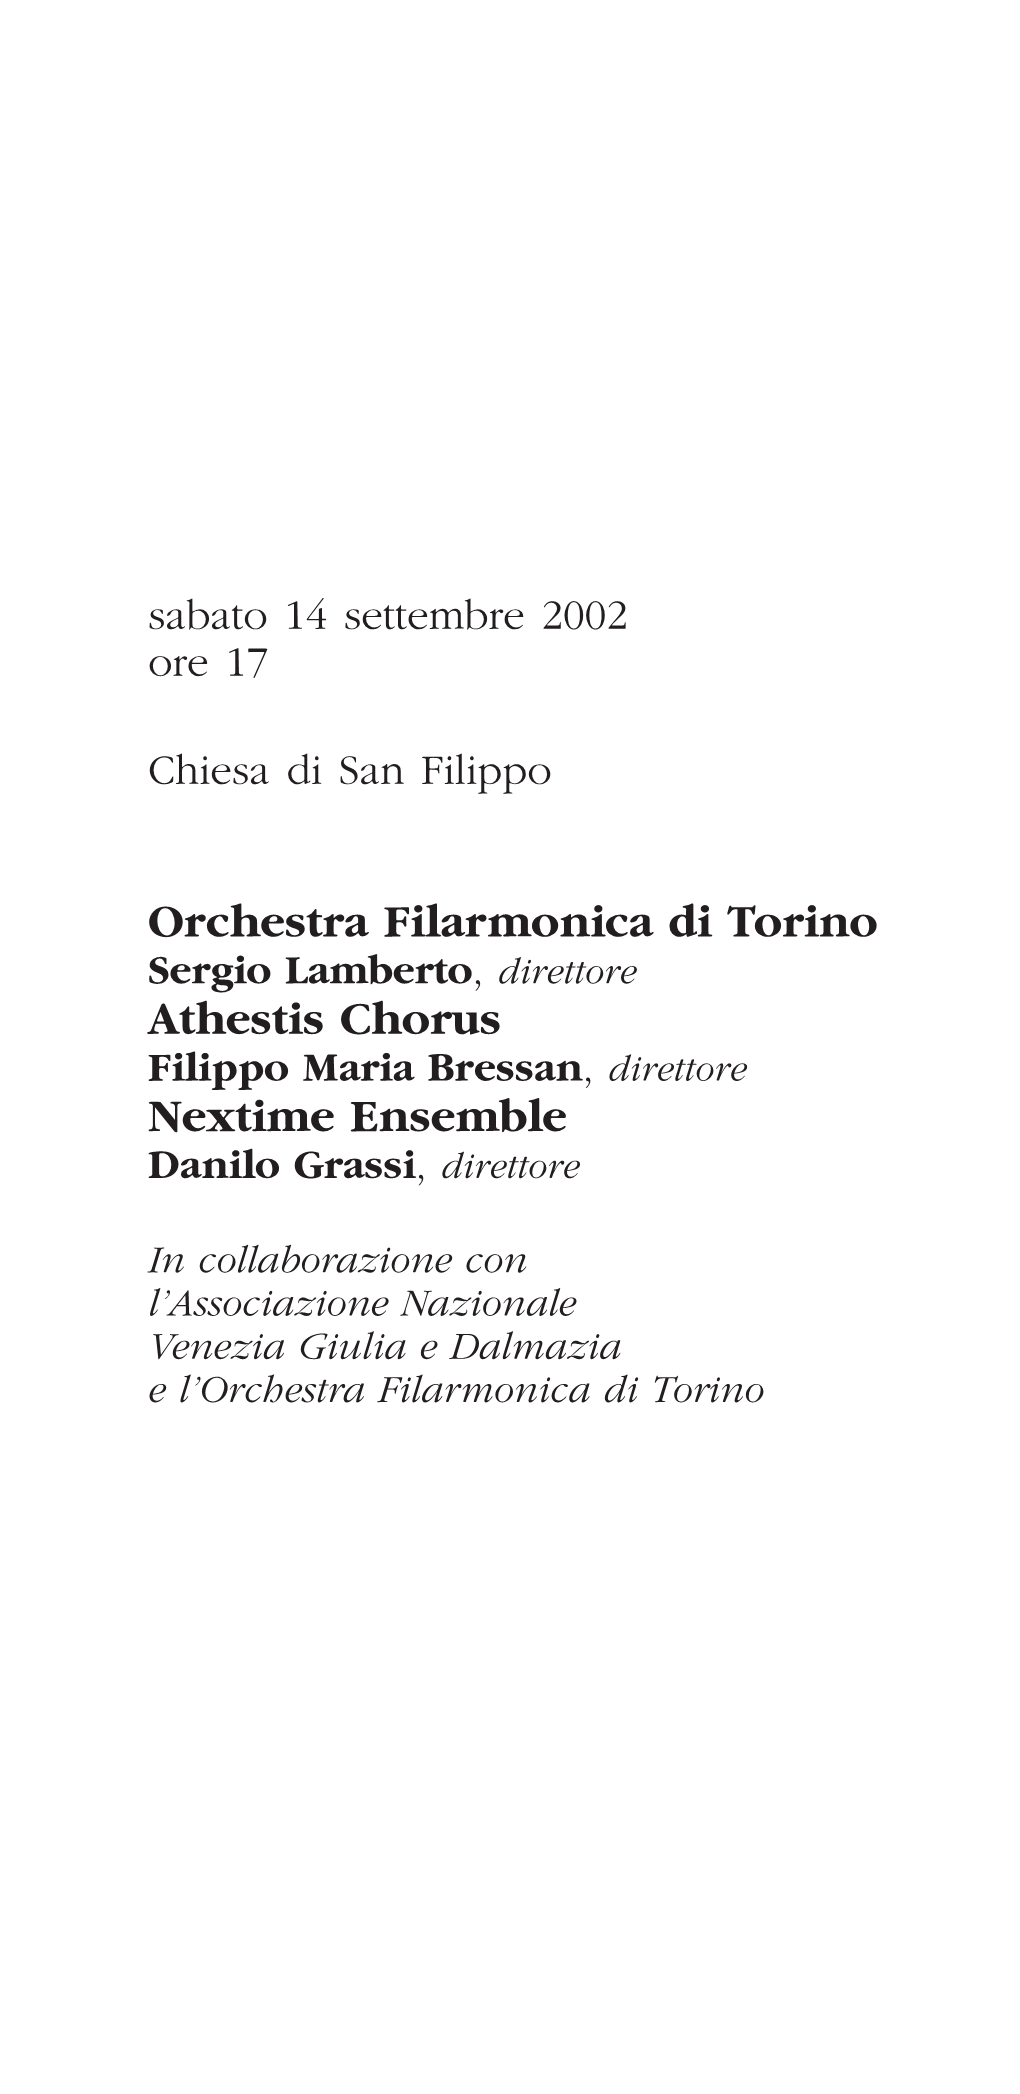 Athestis Chorus Nextime Ensemble Filippo Maria Bressan